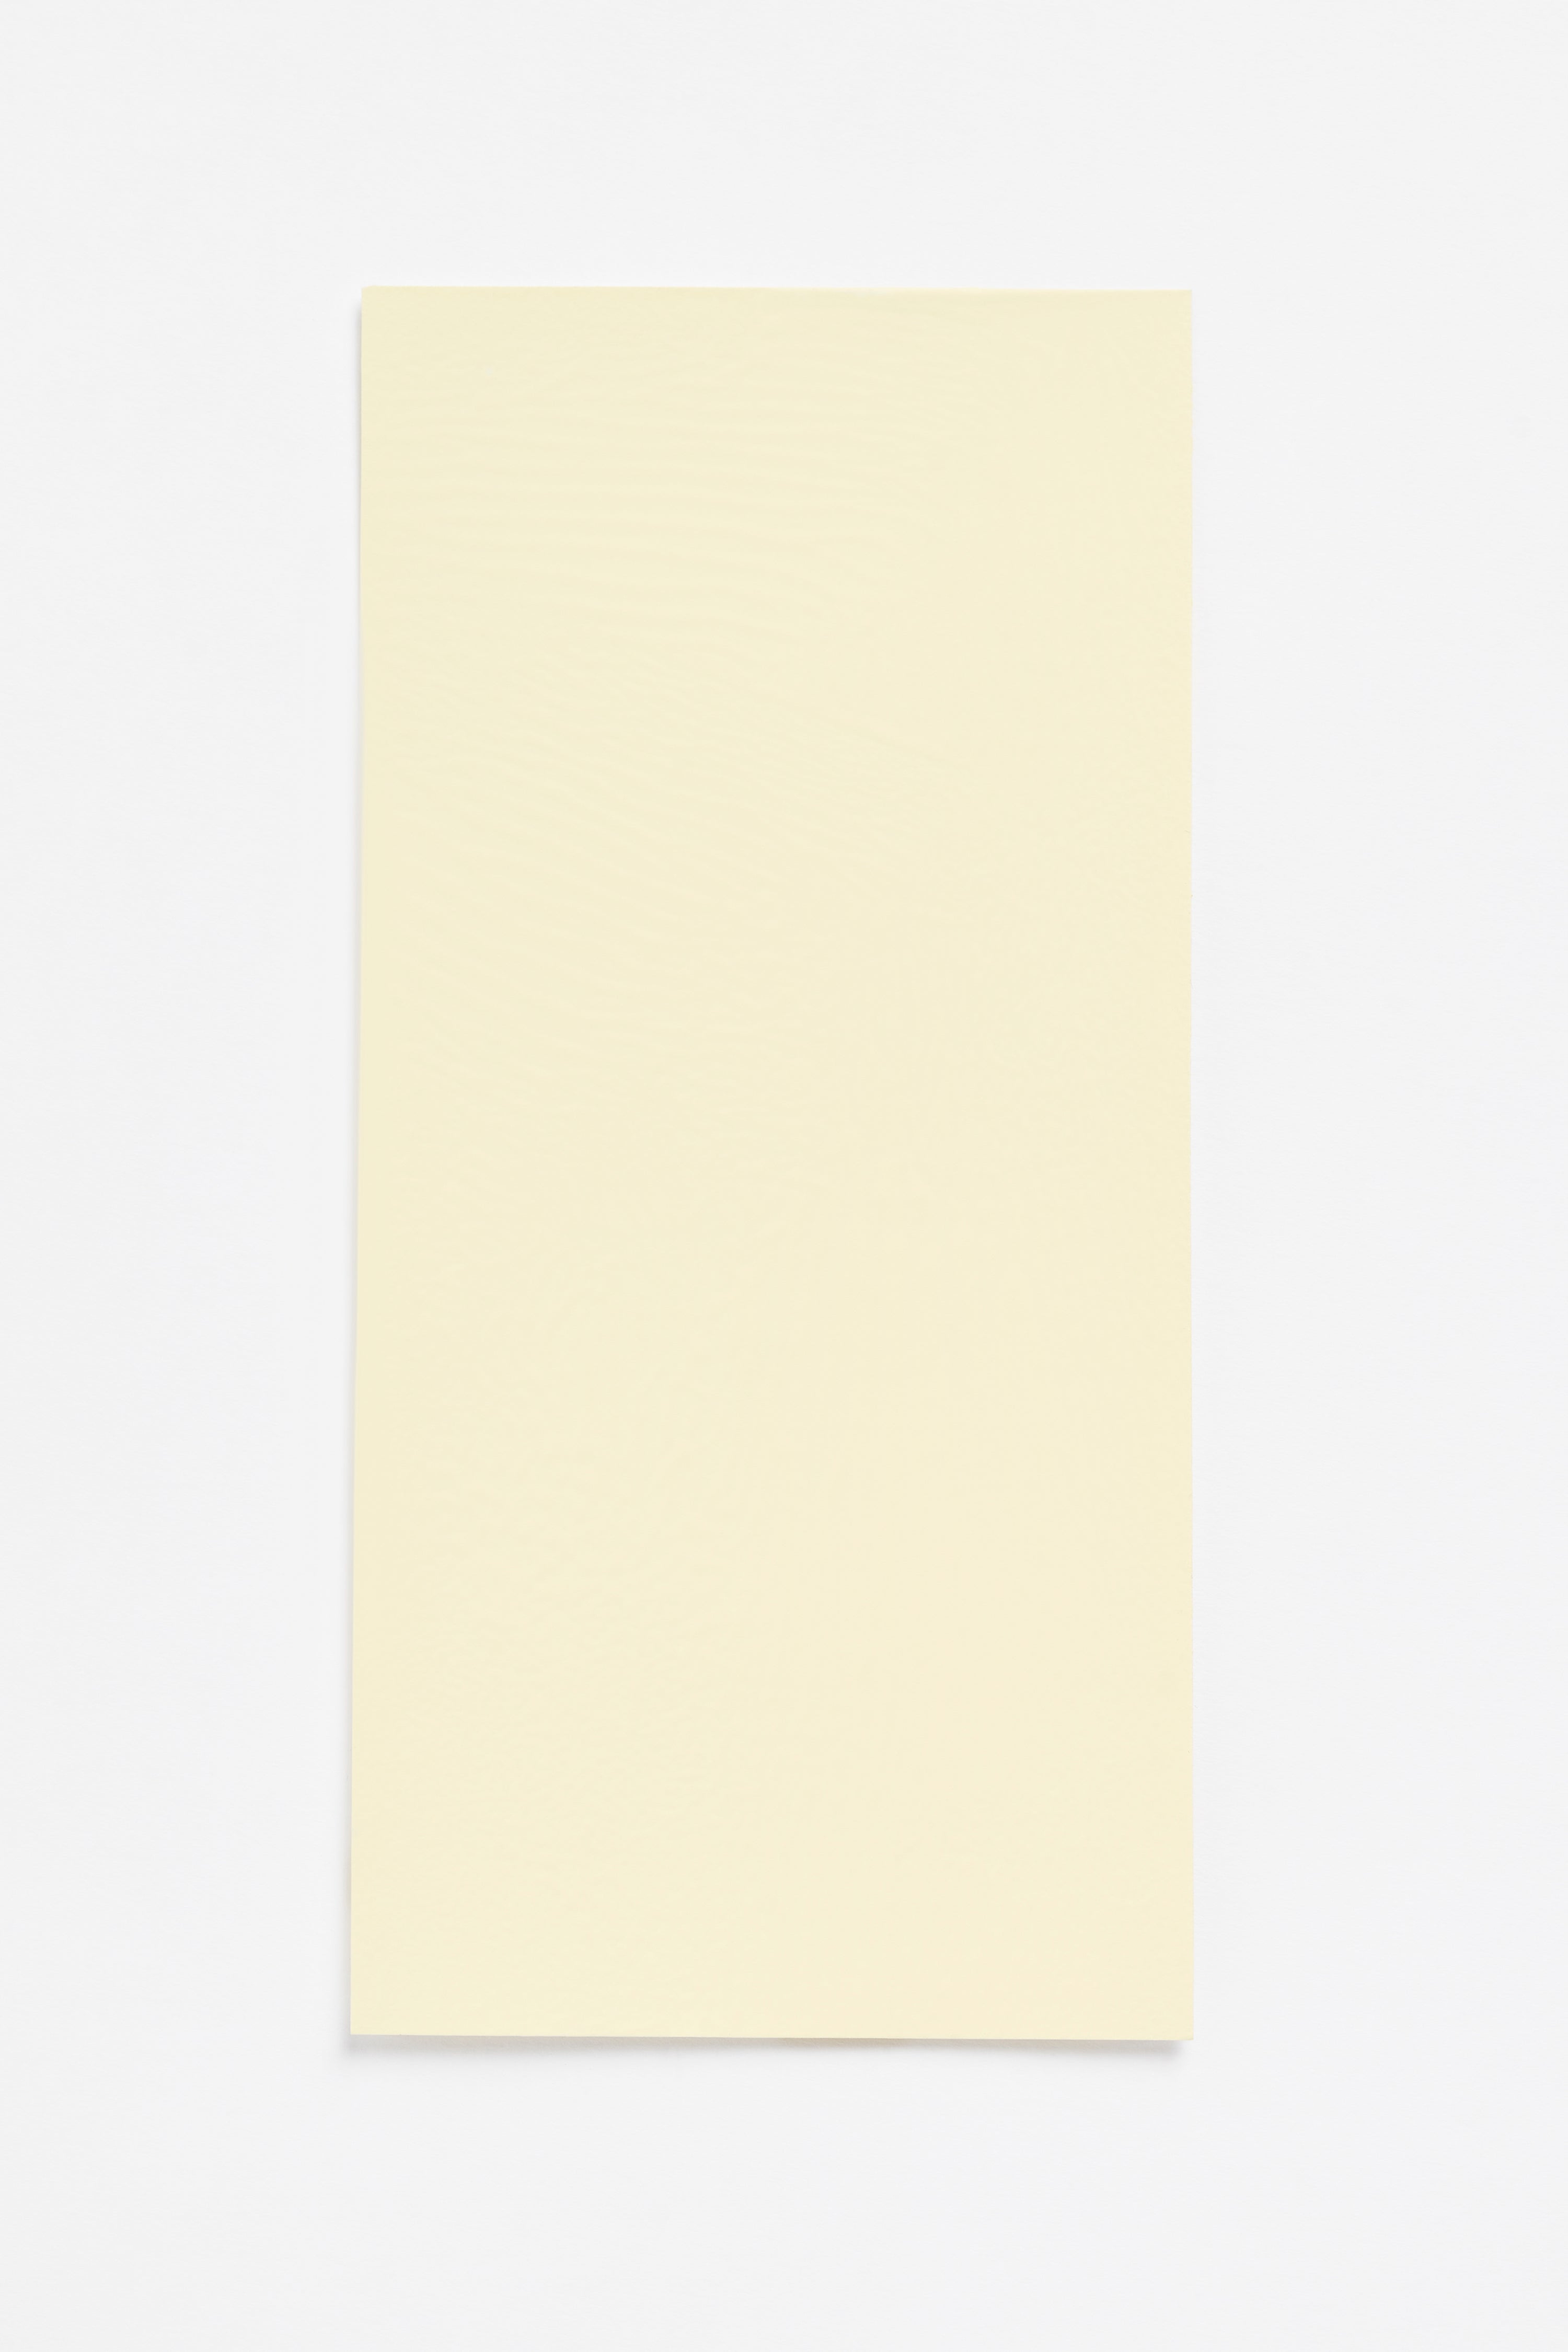 Butter — a paint colour developed by Sabine Marcelis for Blēo